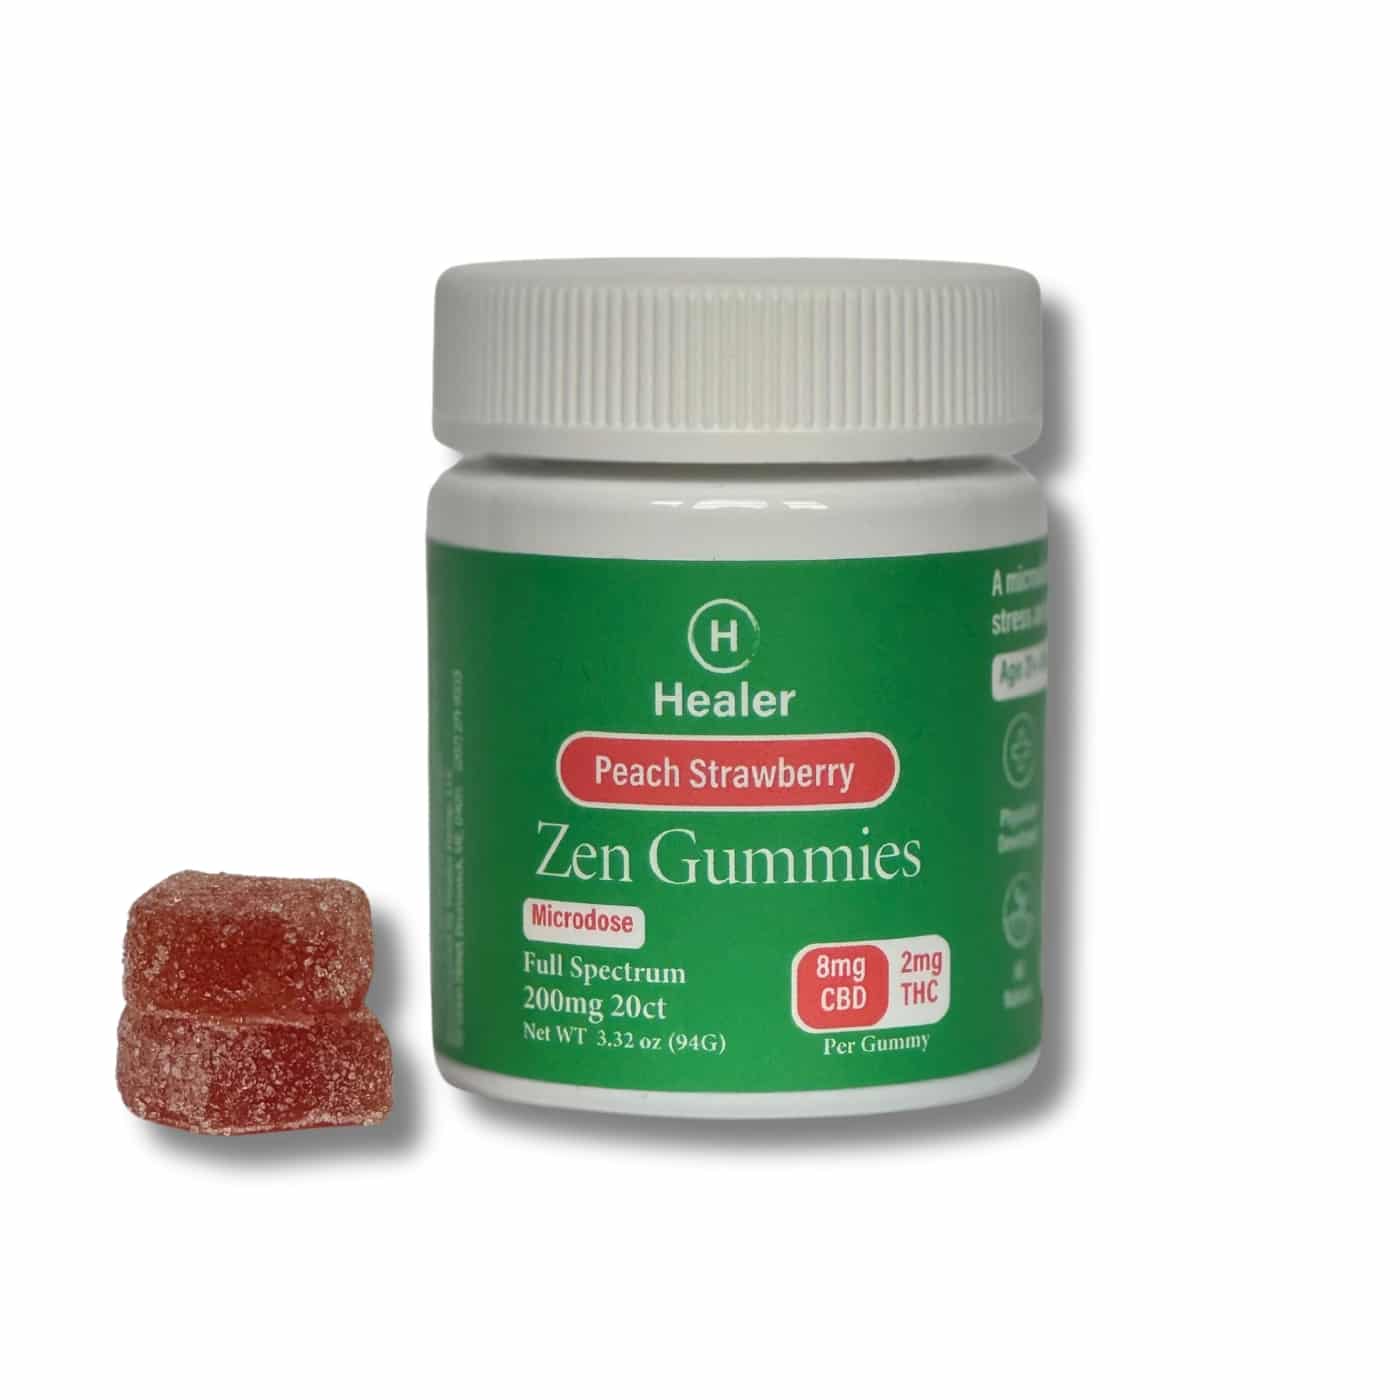 Healer Zen Gummies Product Image